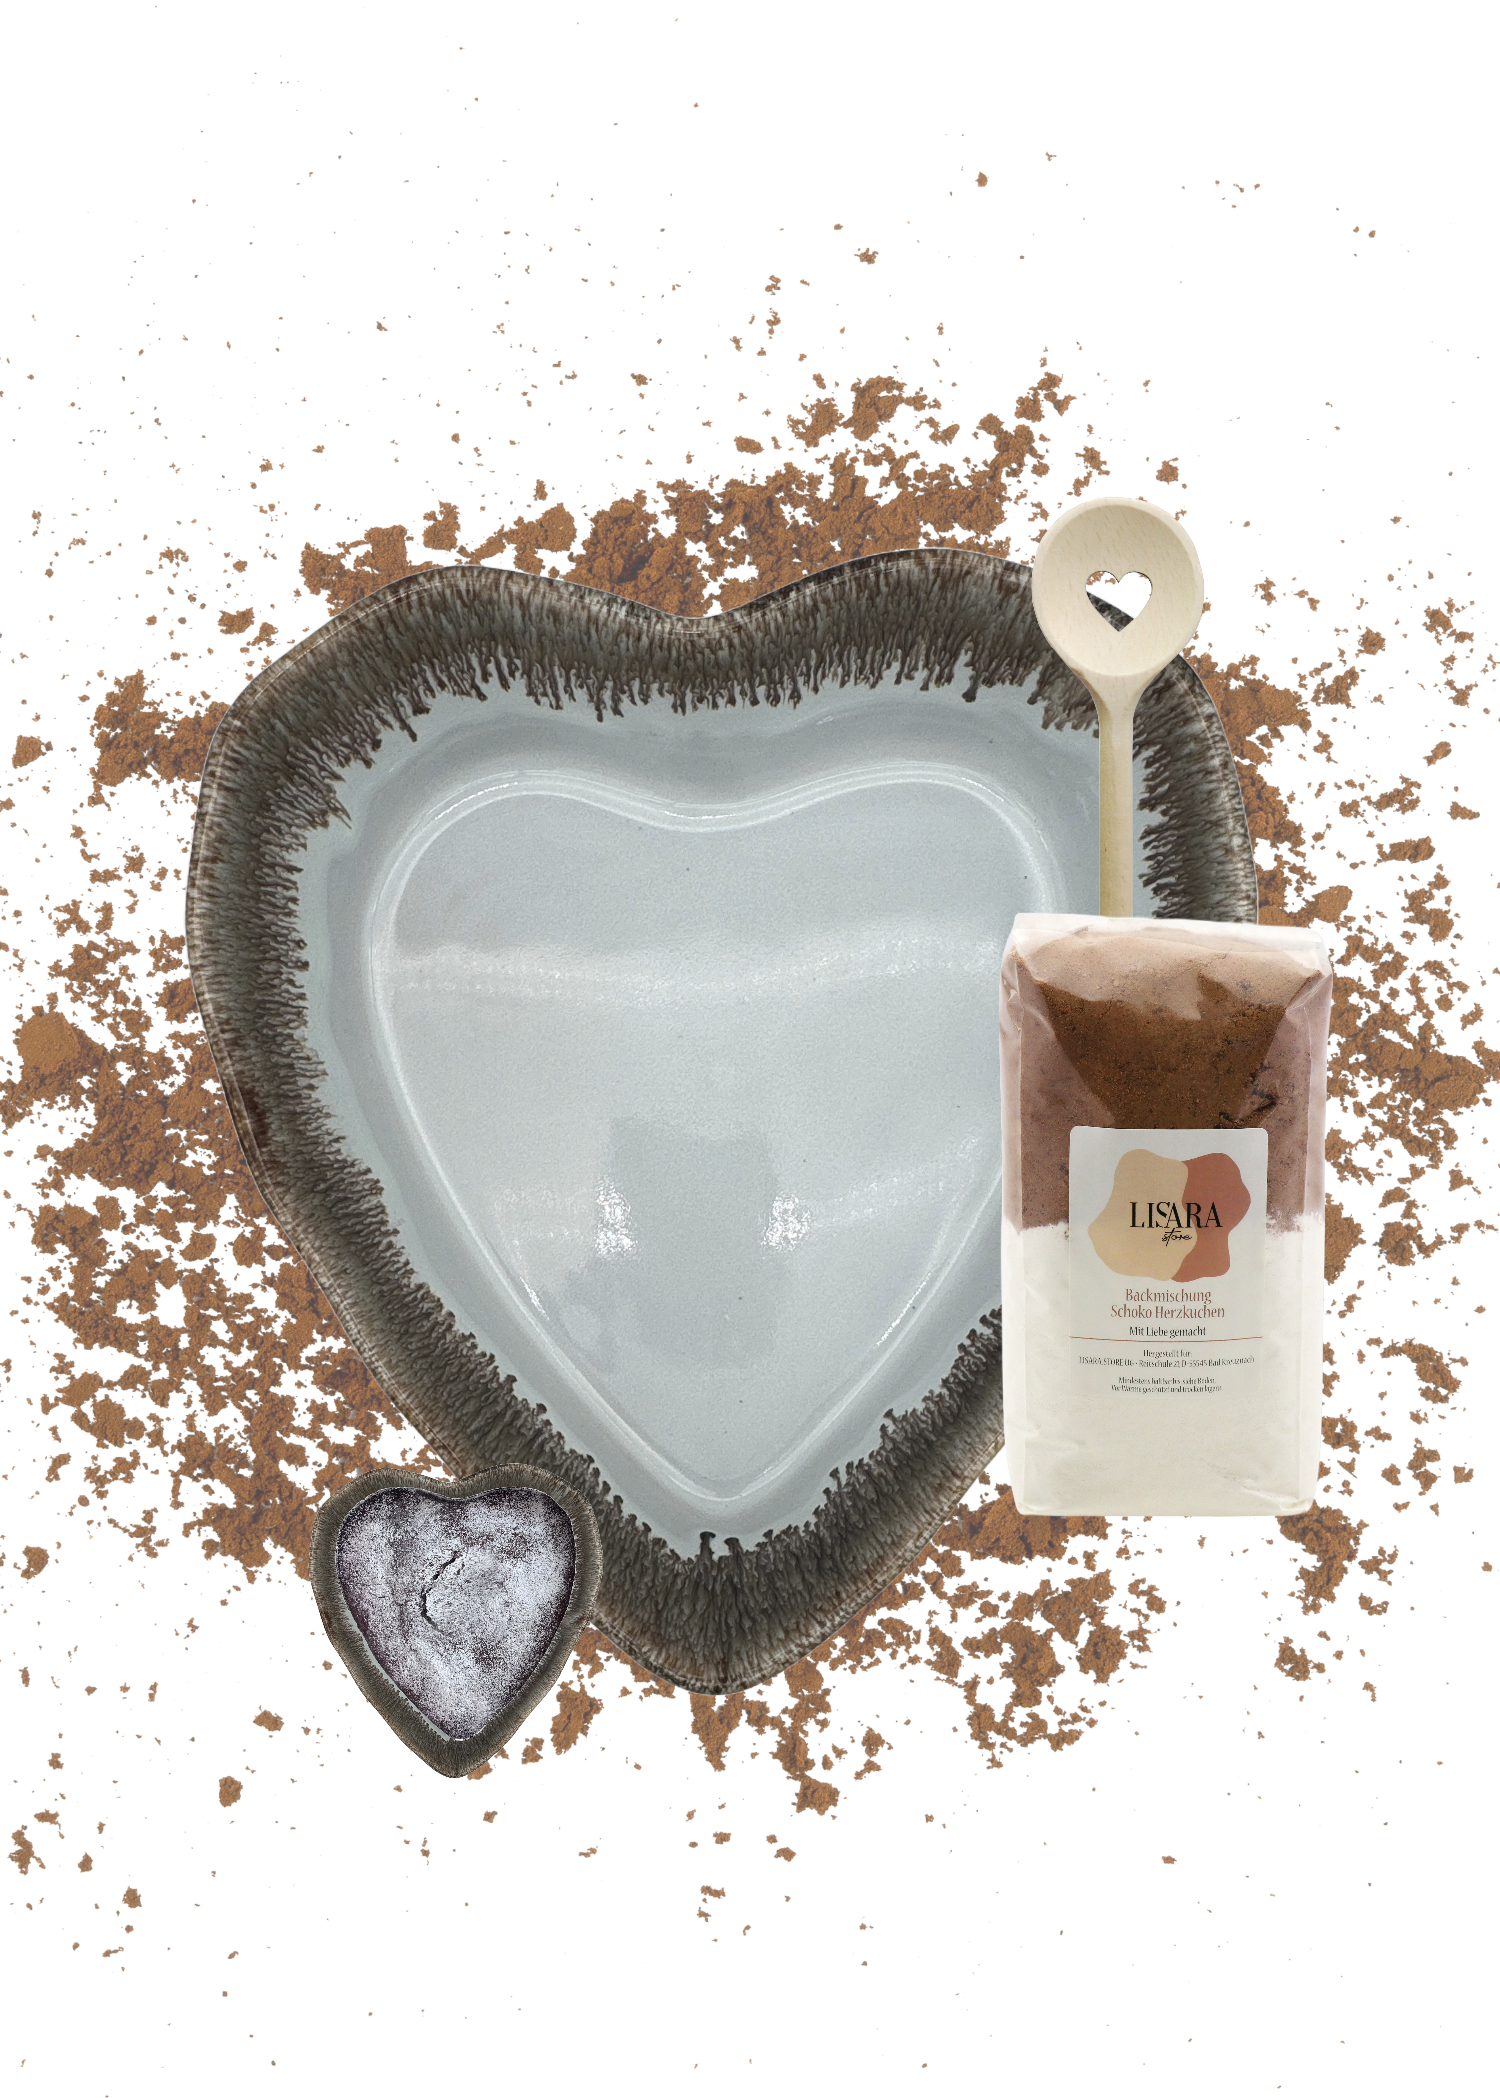 Herzschüssel große Liebe - heisse Schokolade mit Backmischung weil Liebe durch den Magen geht